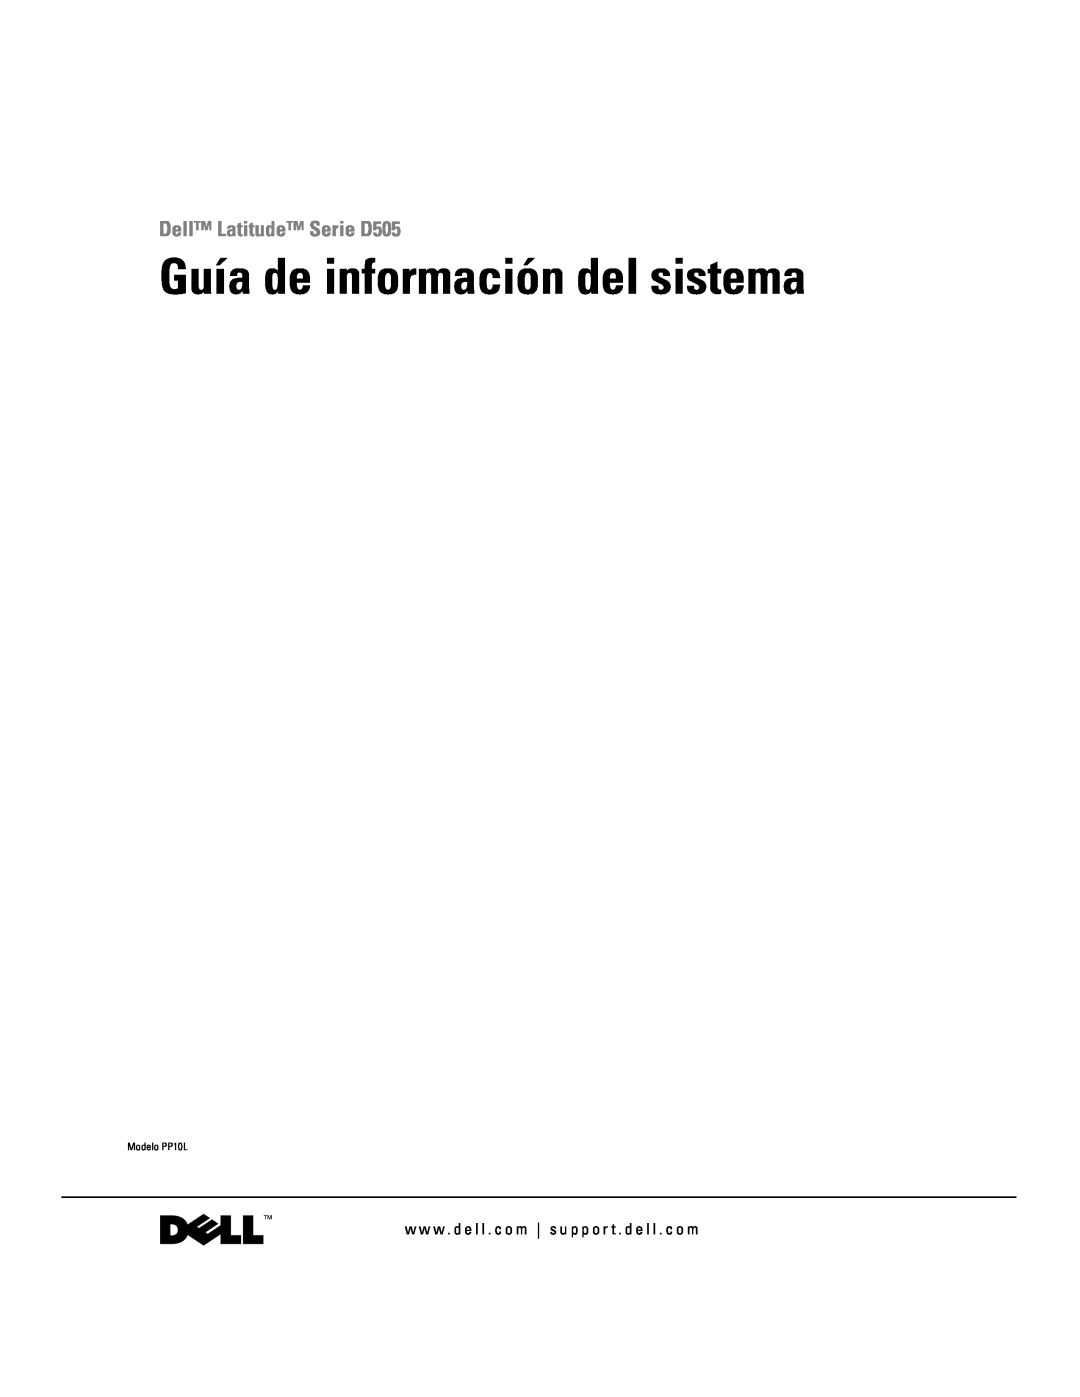 Dell manual Guía de información del sistema, Dell Latitude Serie D505, Modelo PP10L 